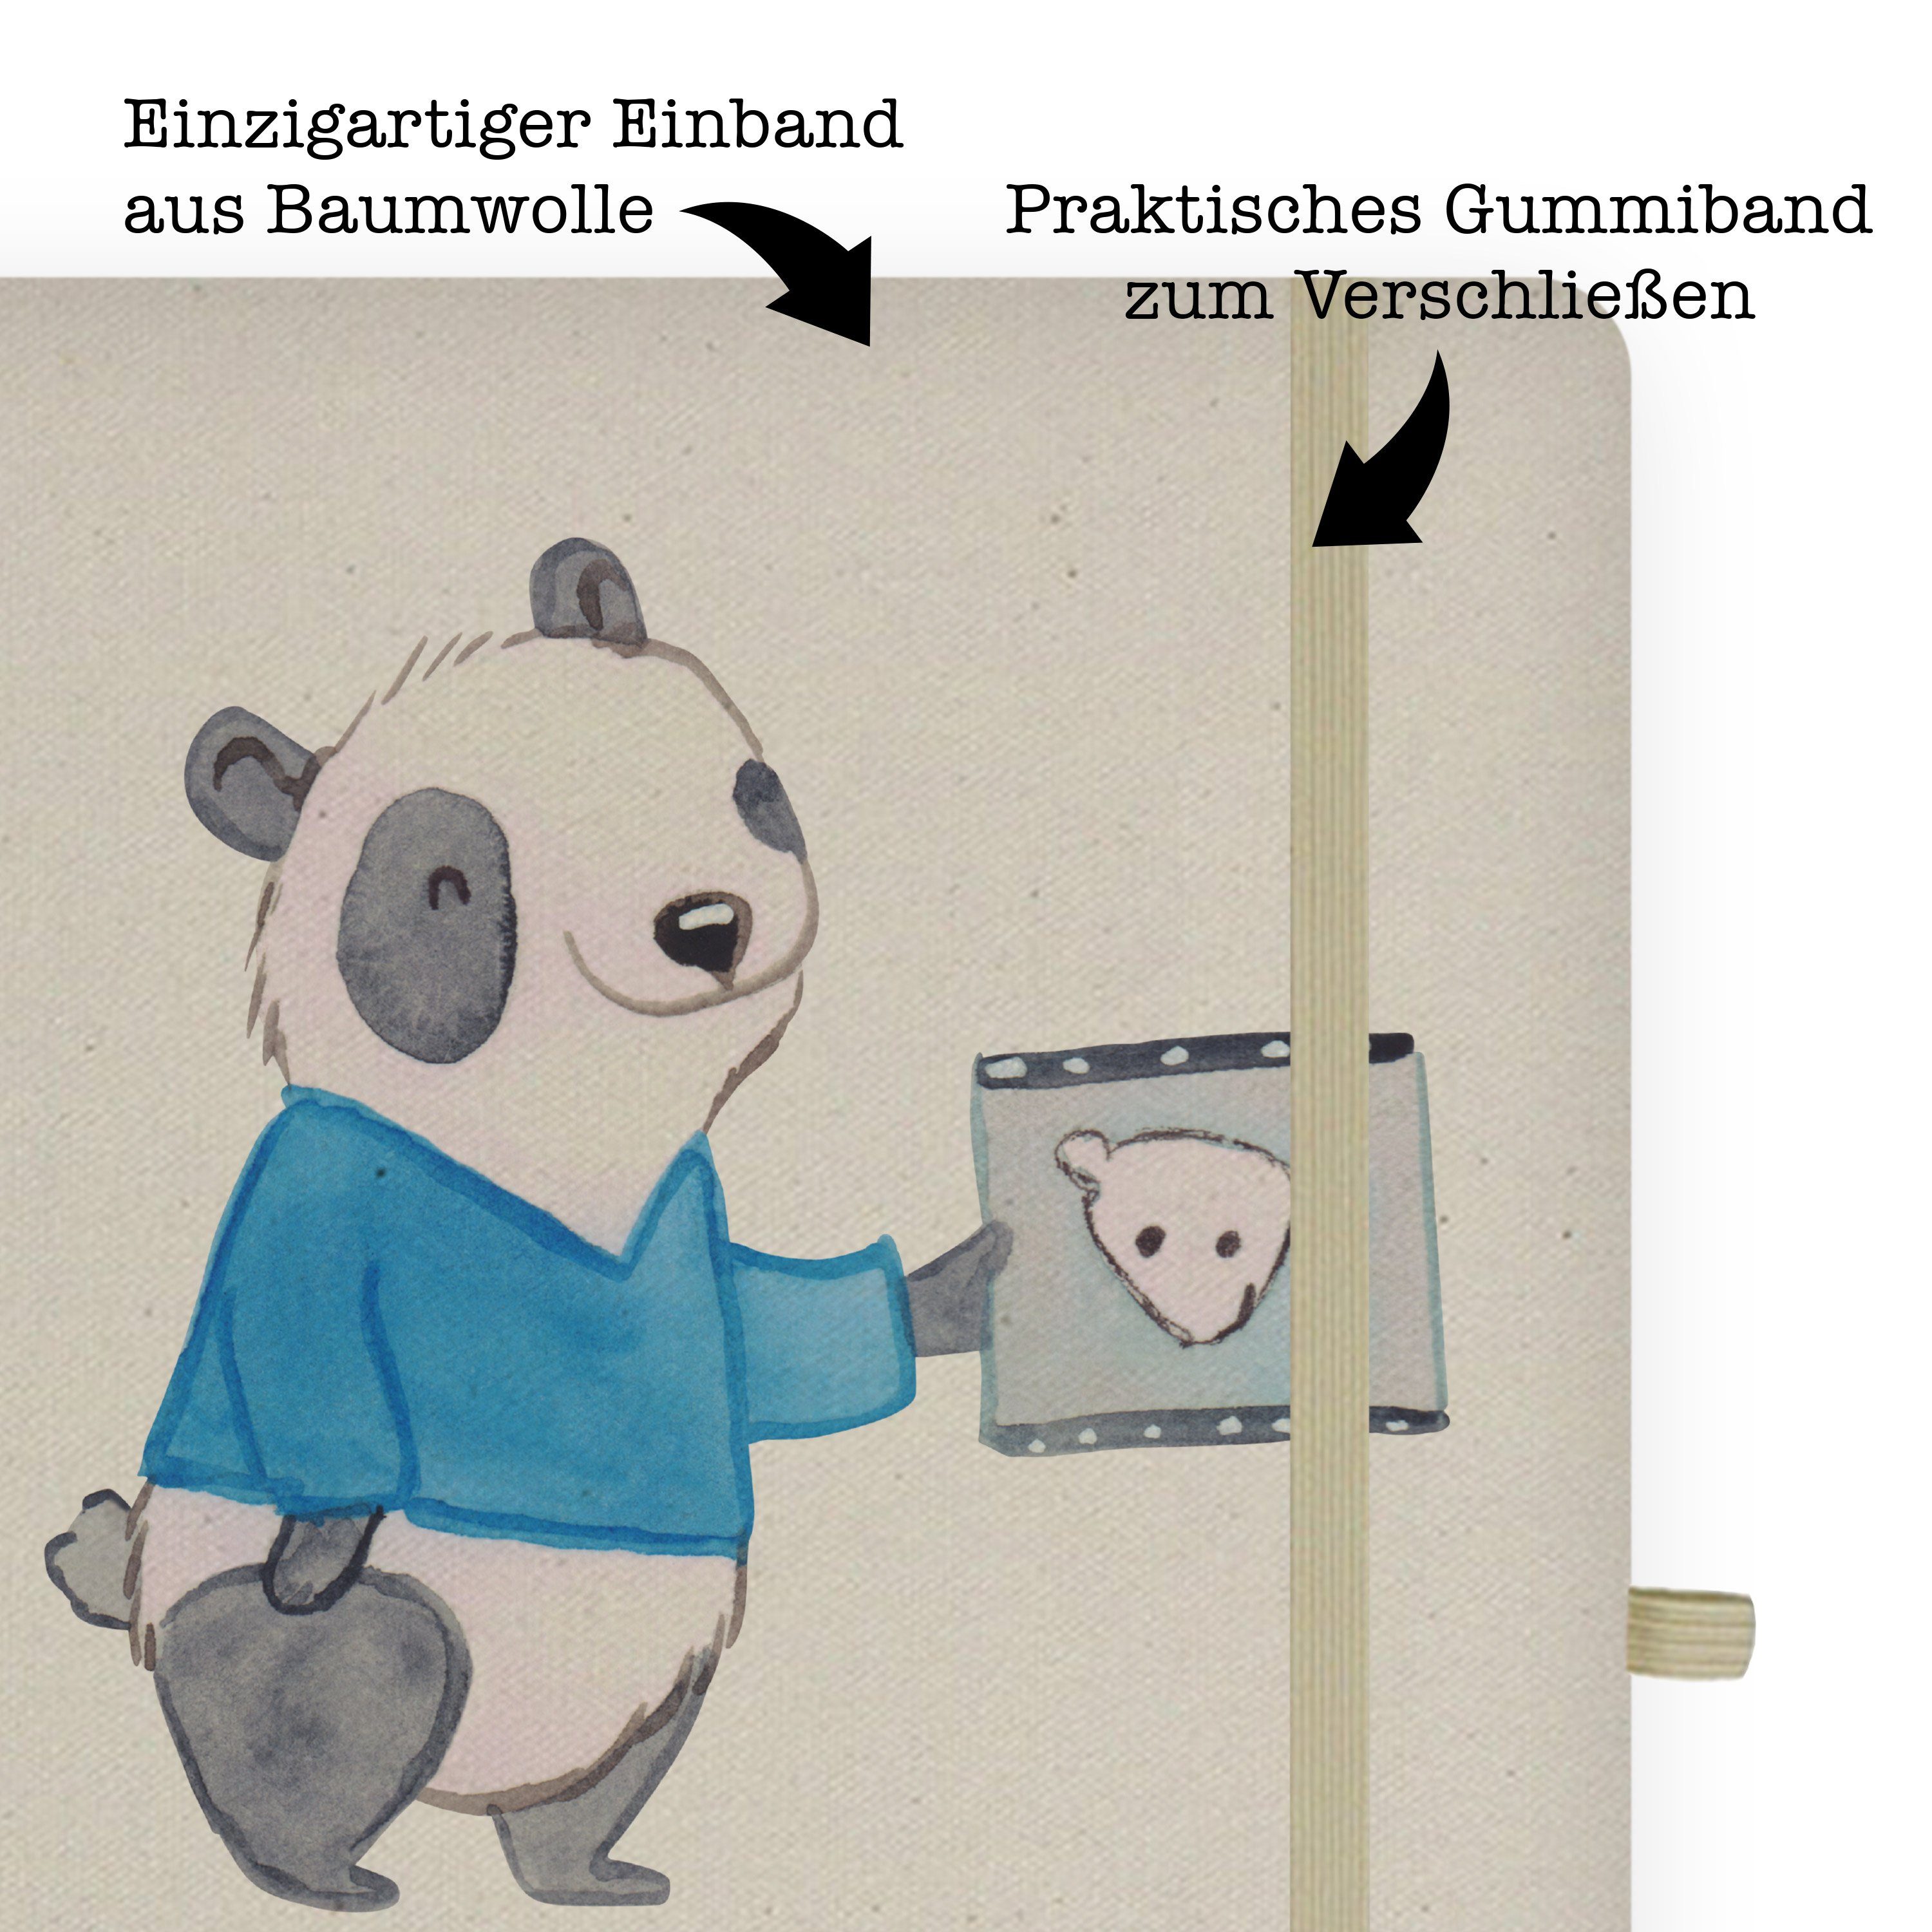 Dankeschön, Mr. Panda Panda mit Transparent Mrs. Mrs. Herz Kieferorthopäde Notizbuch - & - Geschenk, & Firma, Mr.